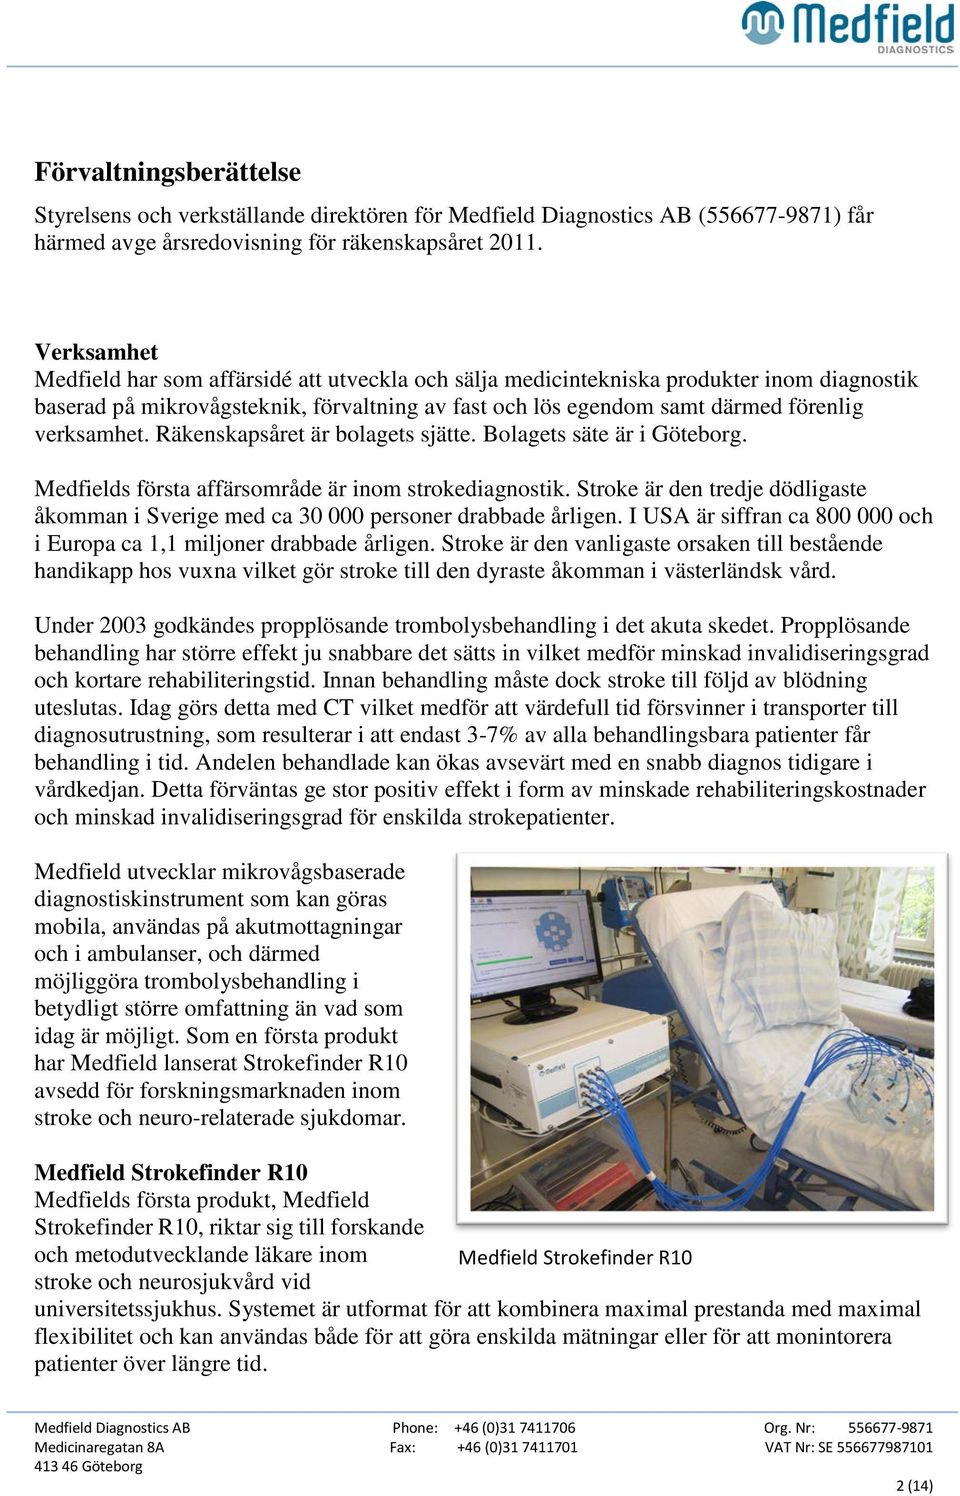 Räkenskapsåret är bolagets sjätte. Bolagets säte är i Göteborg. Medfields första affärsområde är inom strokediagnostik.